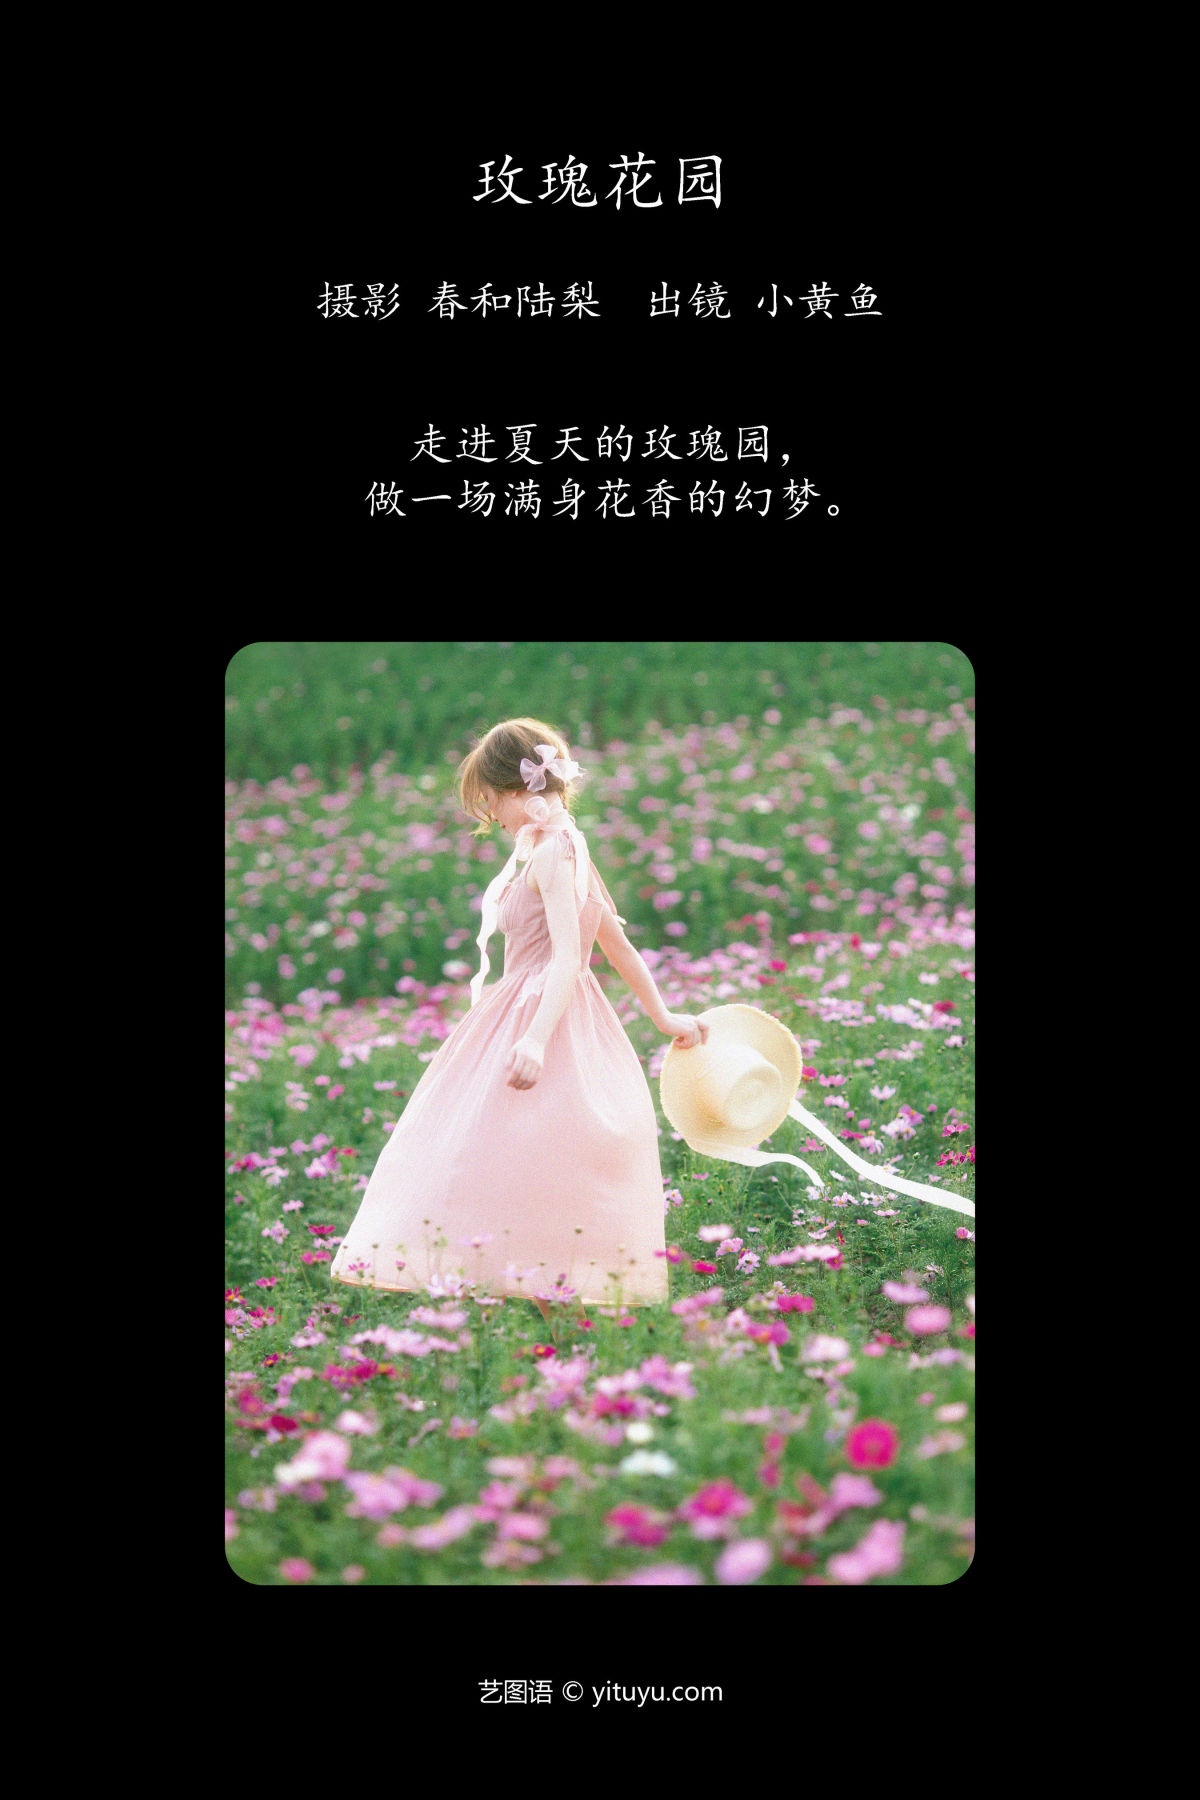 春和陆梨_小黄鱼《玫瑰花园》美图作品图片2